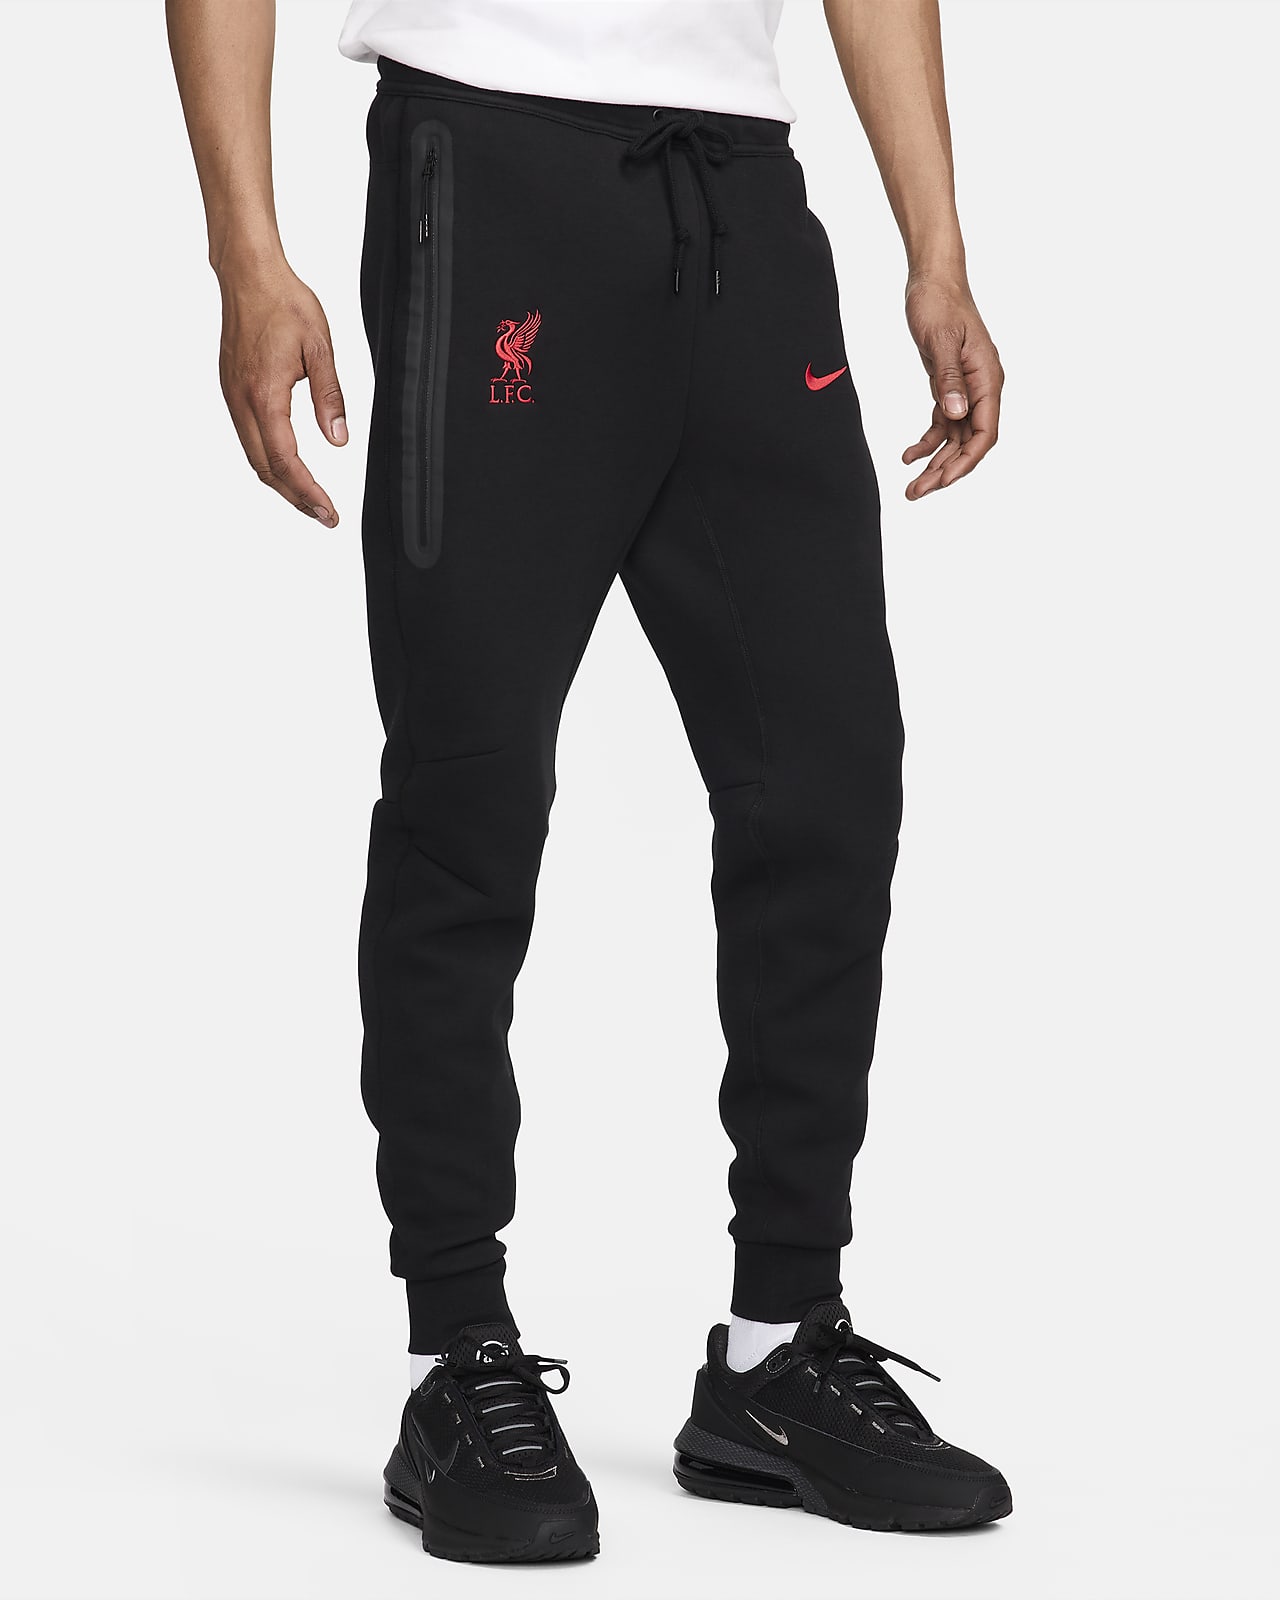 Ανδρικό ποδοσφαιρικό παντελόνι φόρμας Λίβερπουλ Nike Tech Fleece